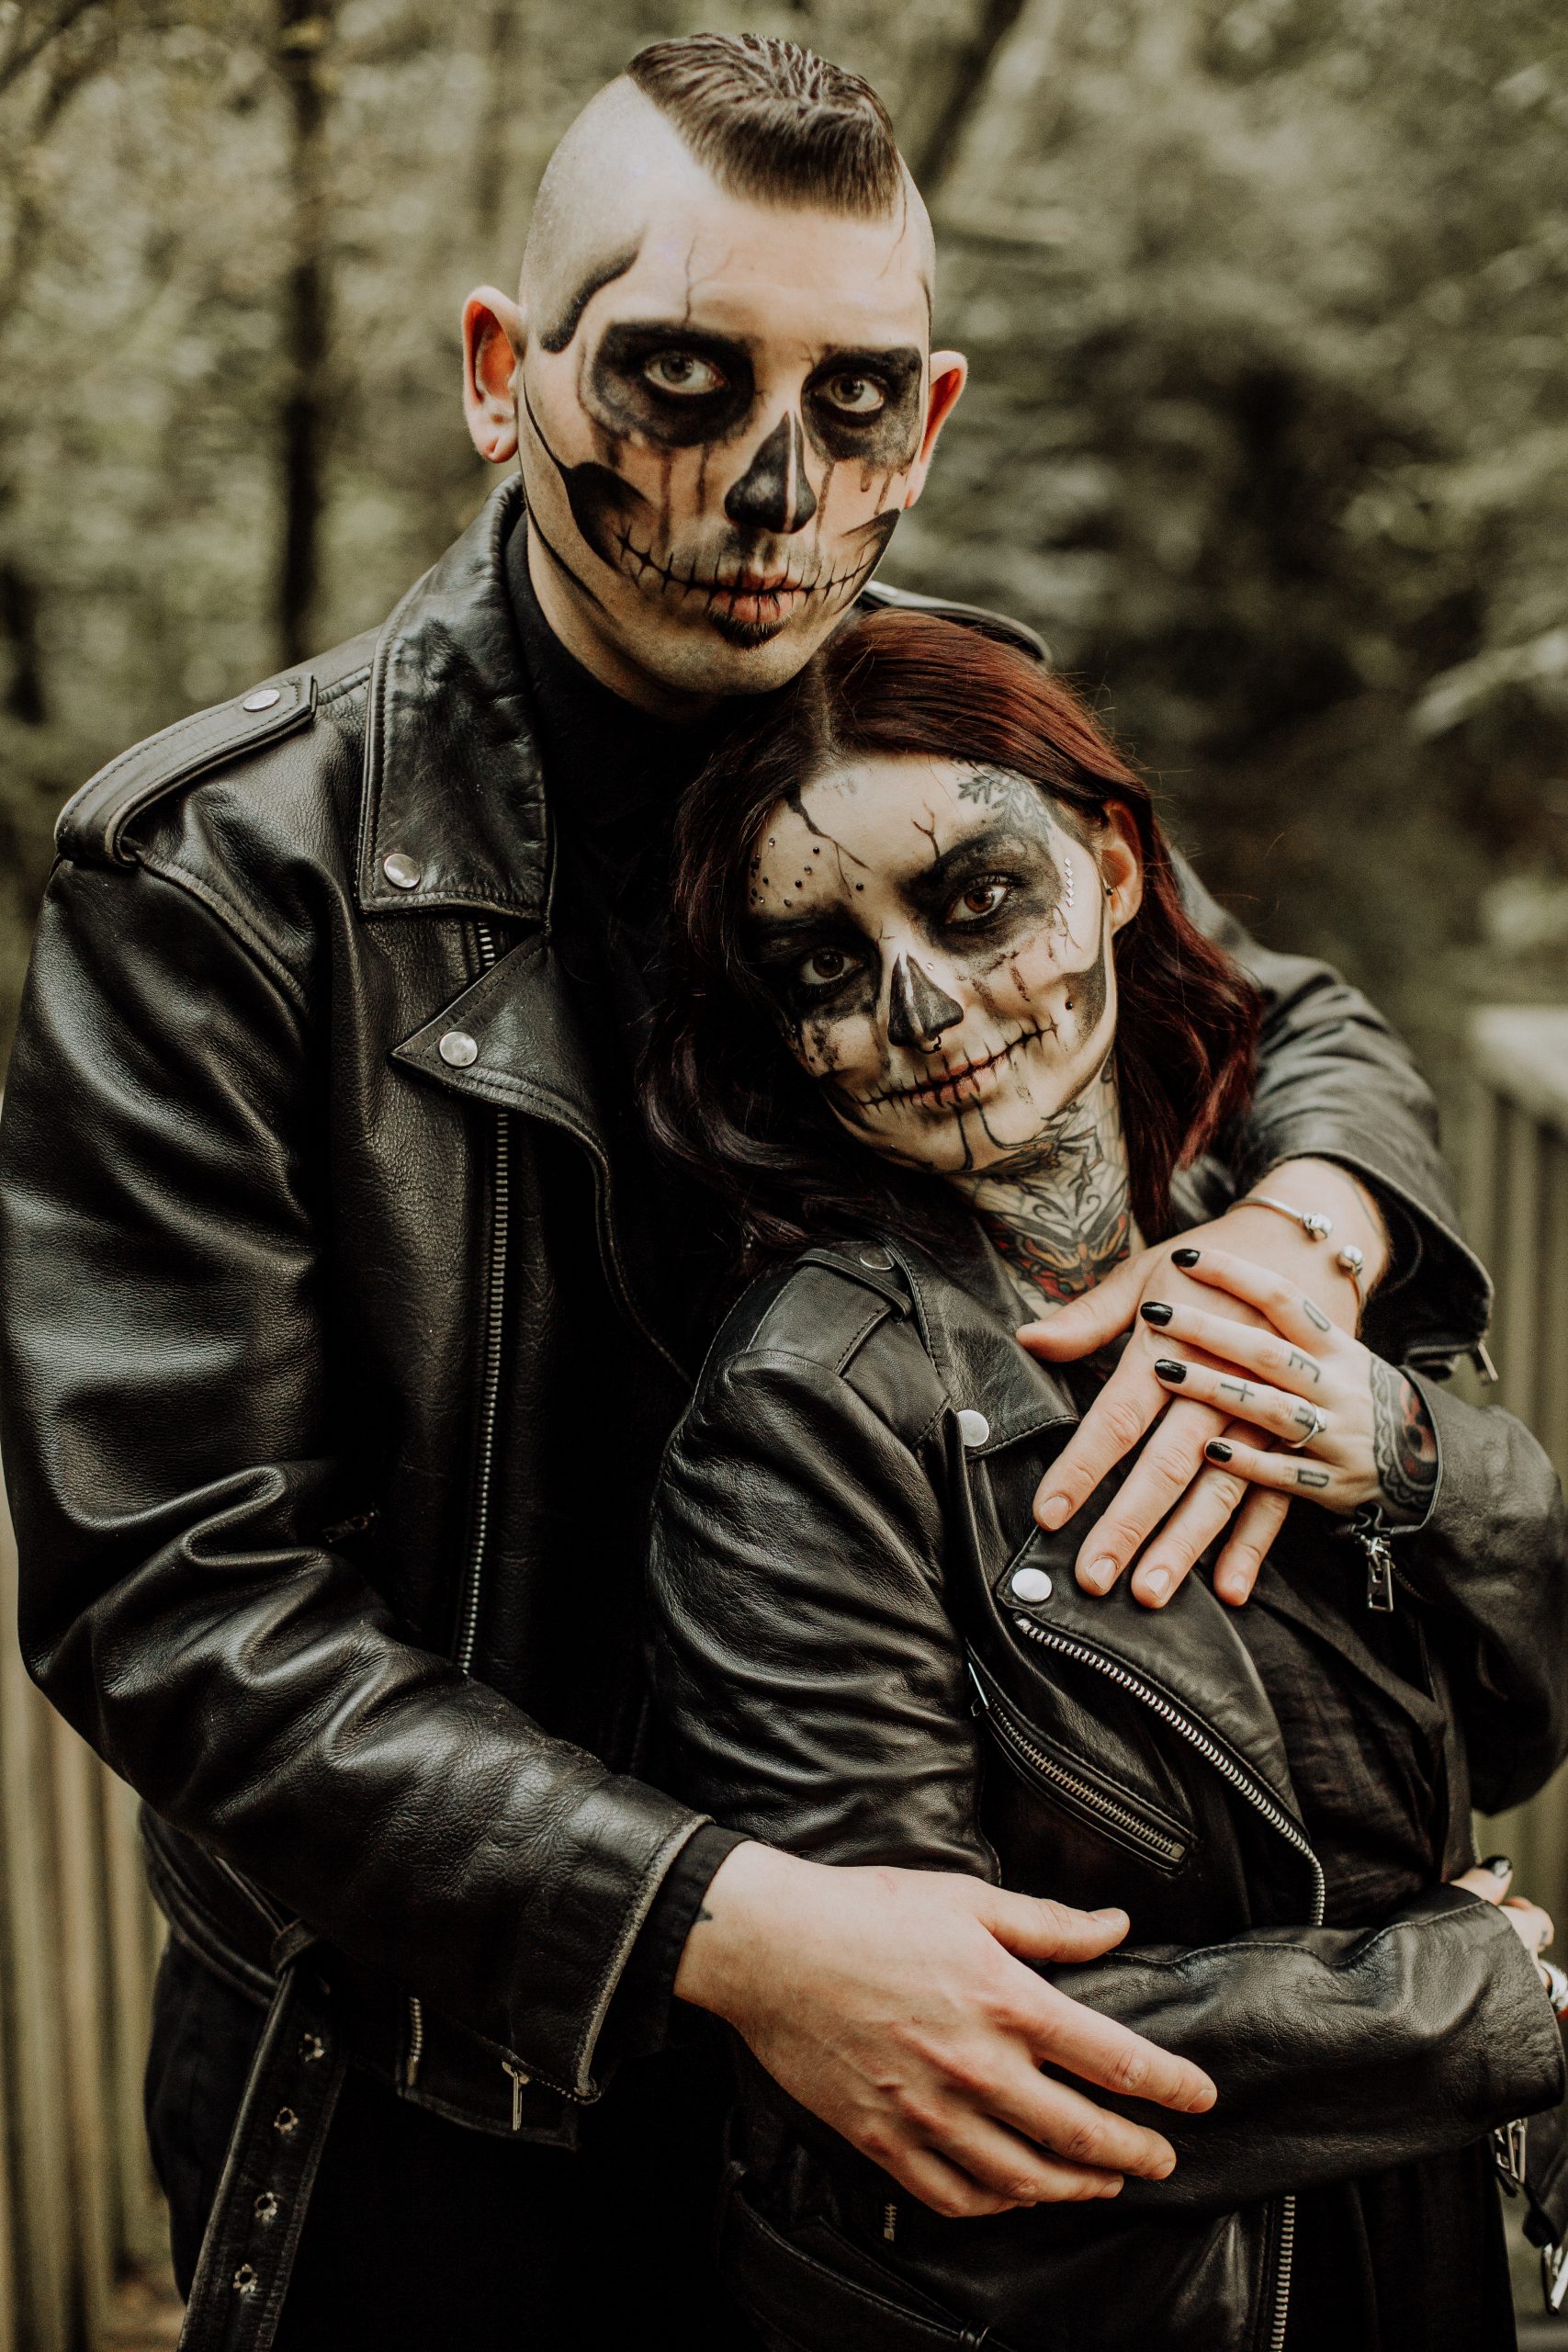 Séance couple tatoué thème Halloween à la forêt de Phalempin dans le Nord avec un maquillage de squelette et fumigène